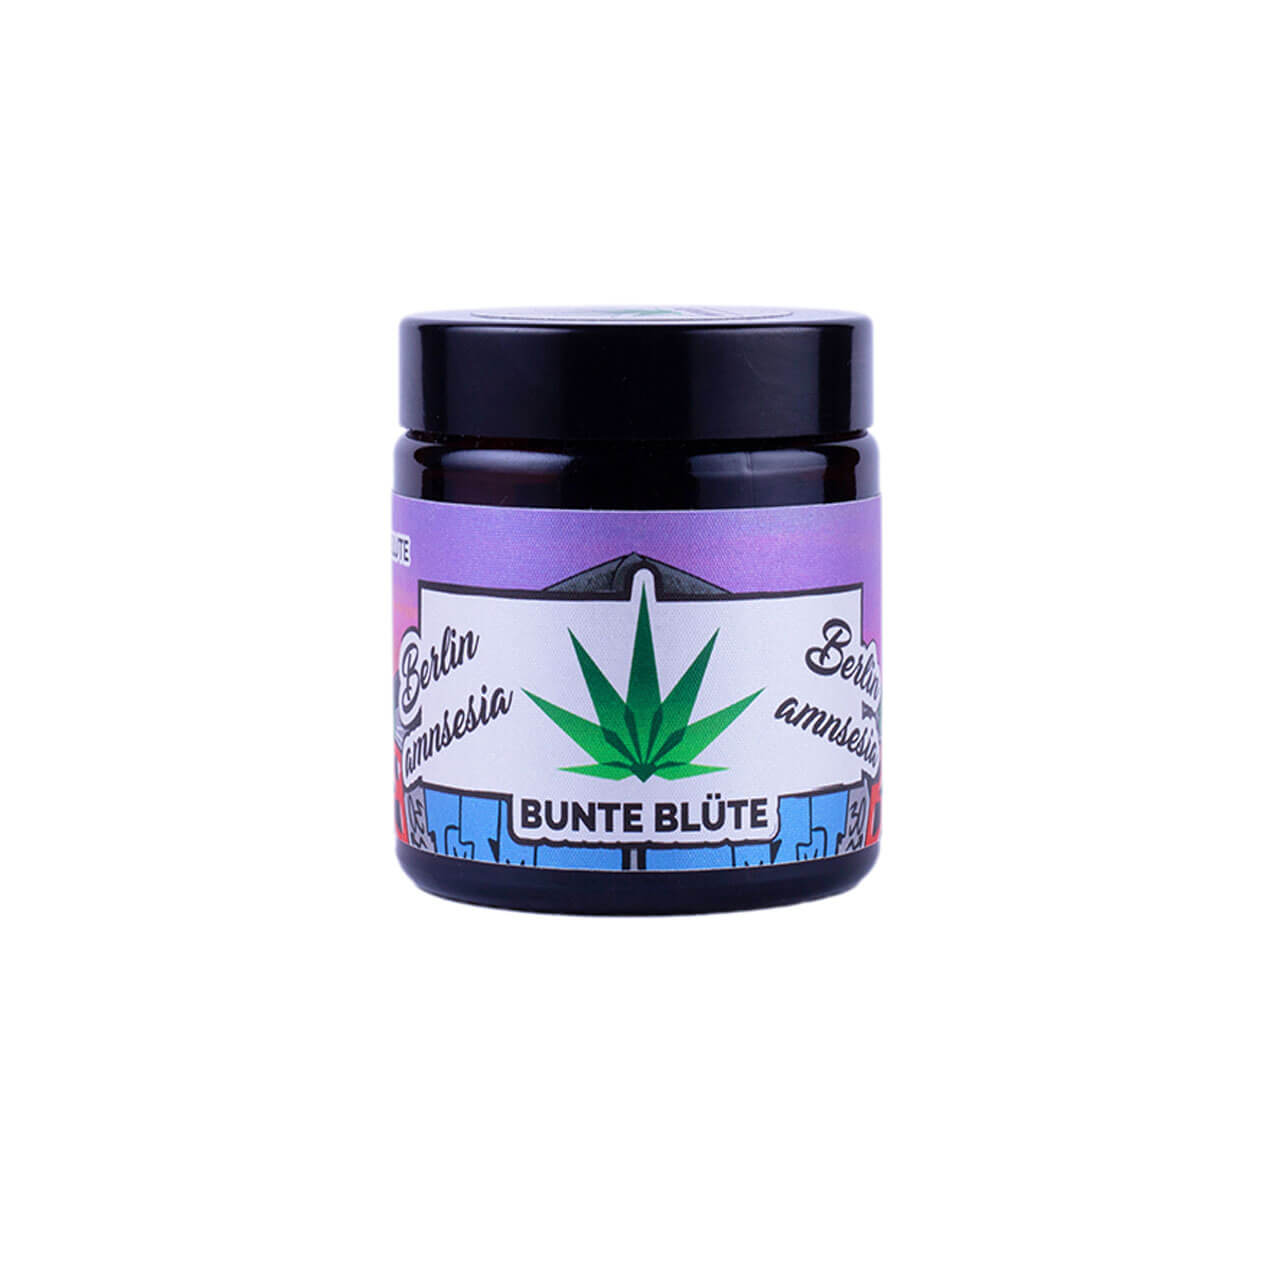 bunte-bluete-cbd-cannabis-berlin-amnesia-2gramm-glas-kaufen4